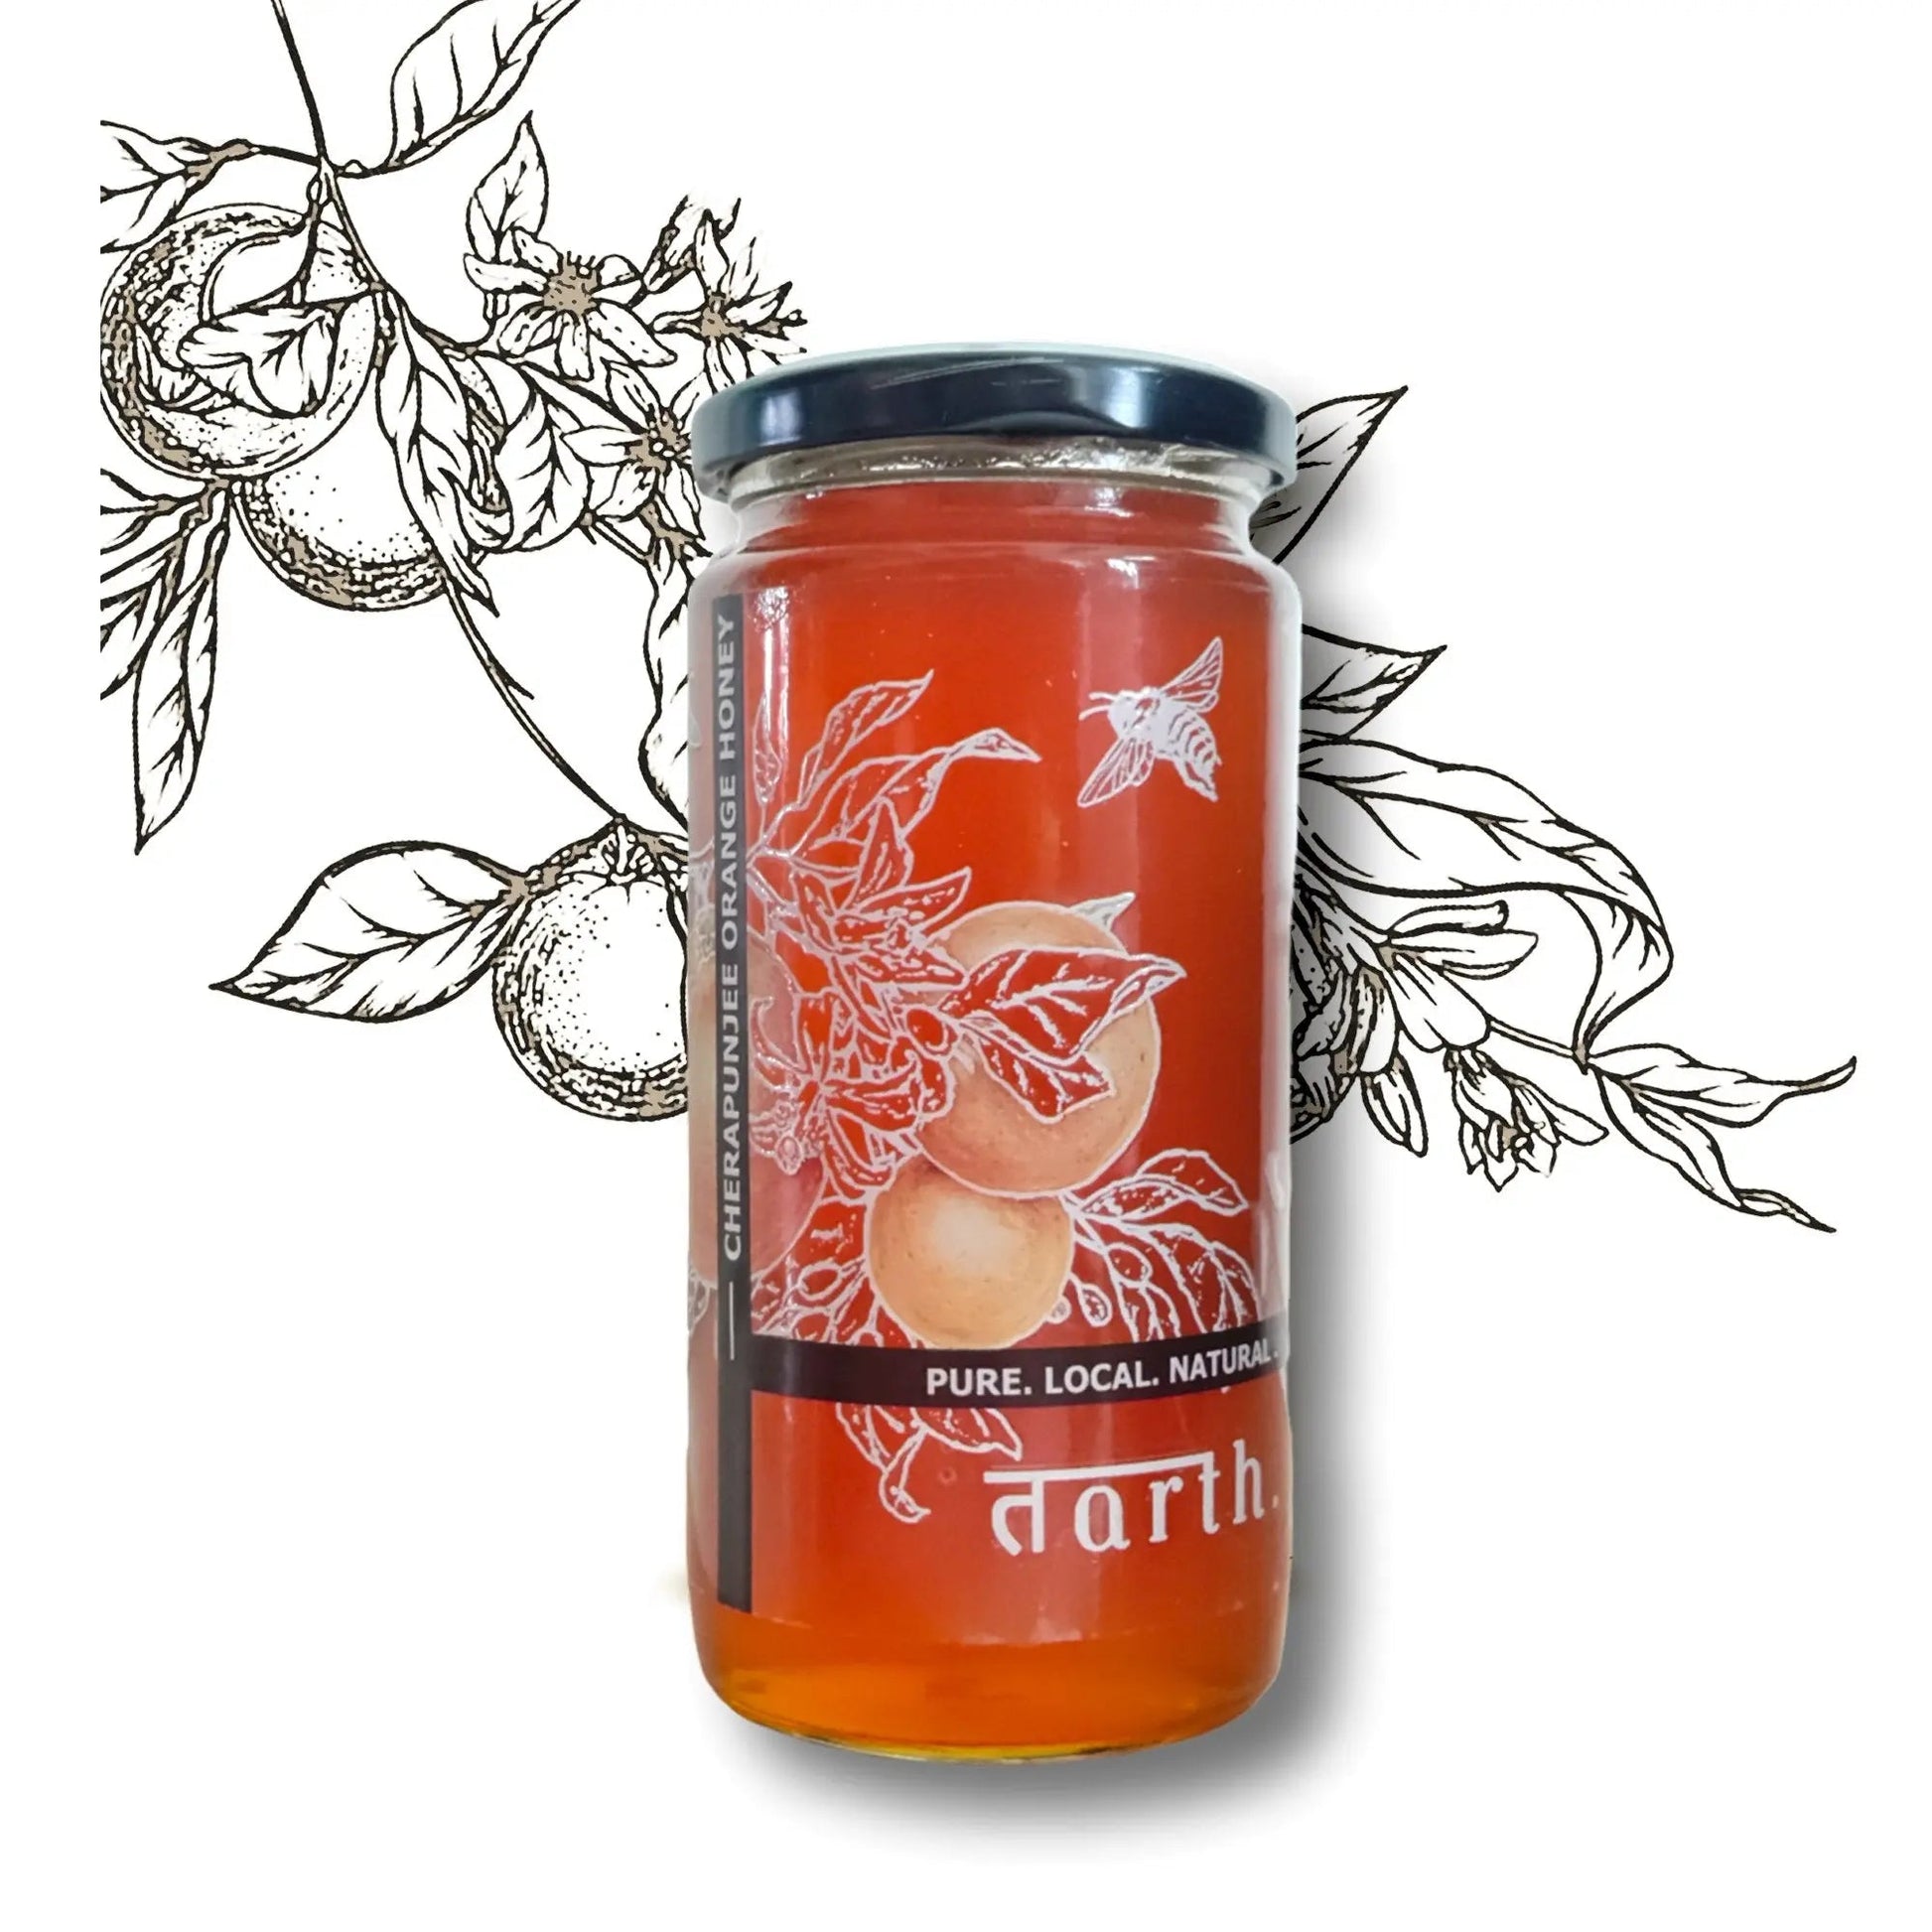 Tarth Raw Cherrapunjee Orange Honey - 100% Pure | Natural | Unprocessed 